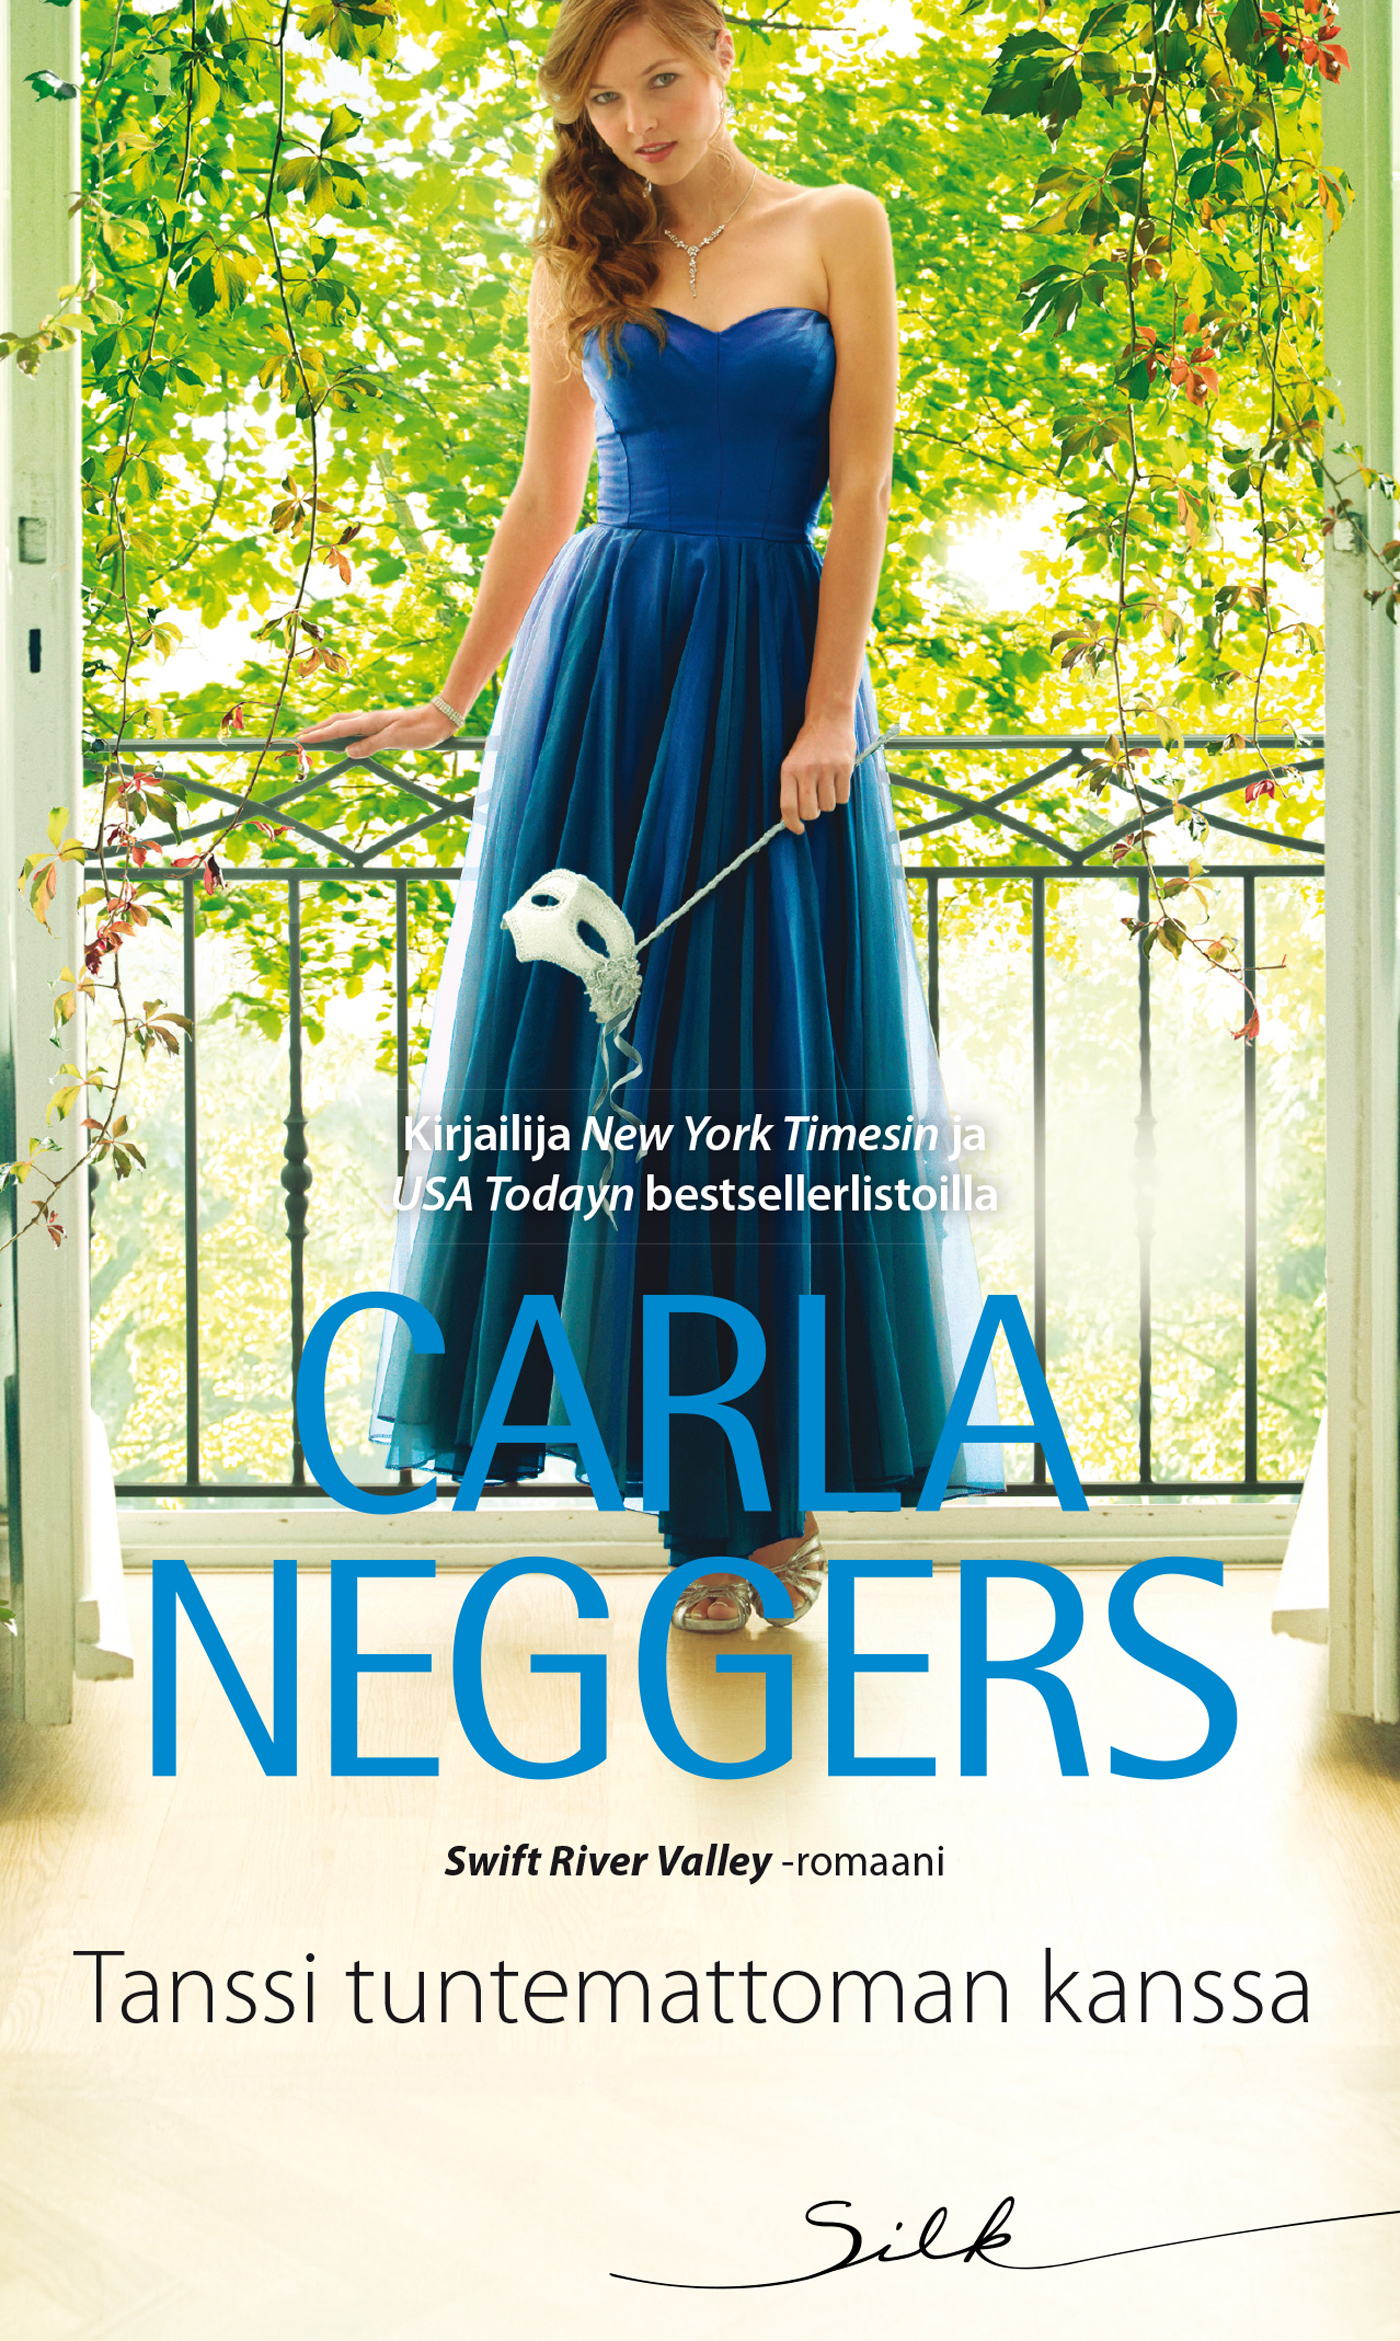 Neggers, Carla - Tanssi tuntemattoman kanssa, ebook